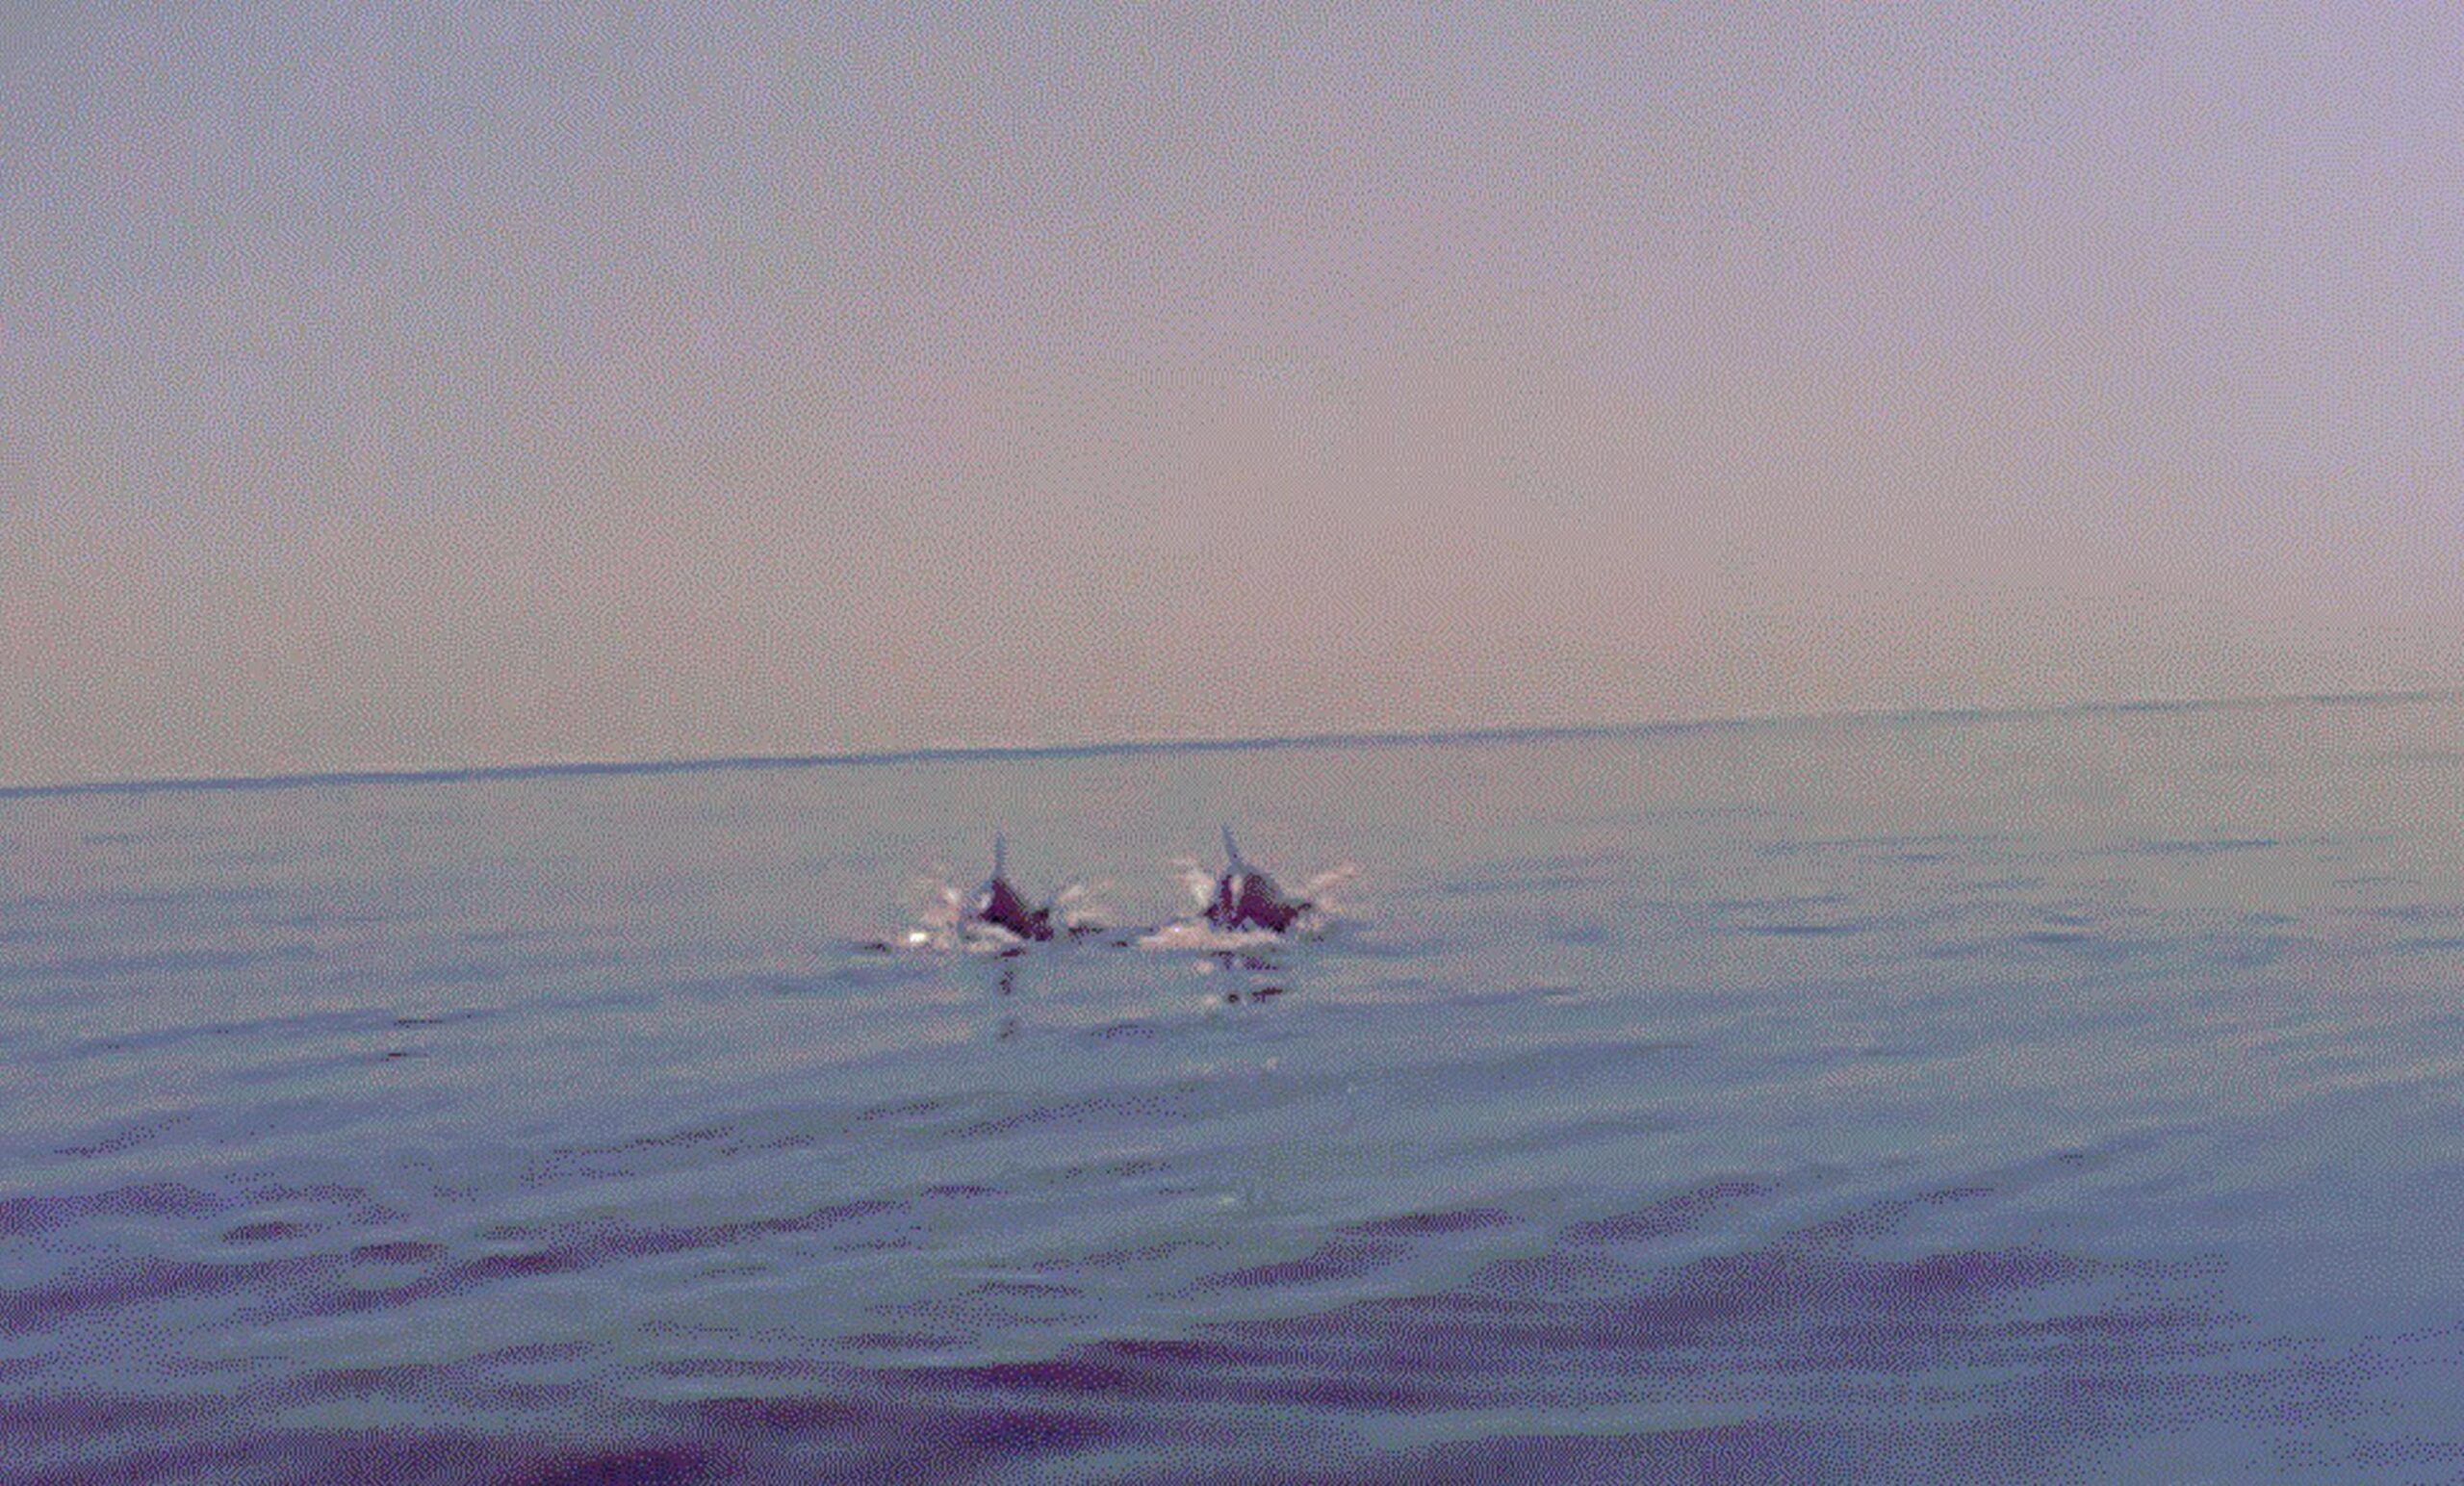 Branco di delfini avvistato a largo di Pesaro01